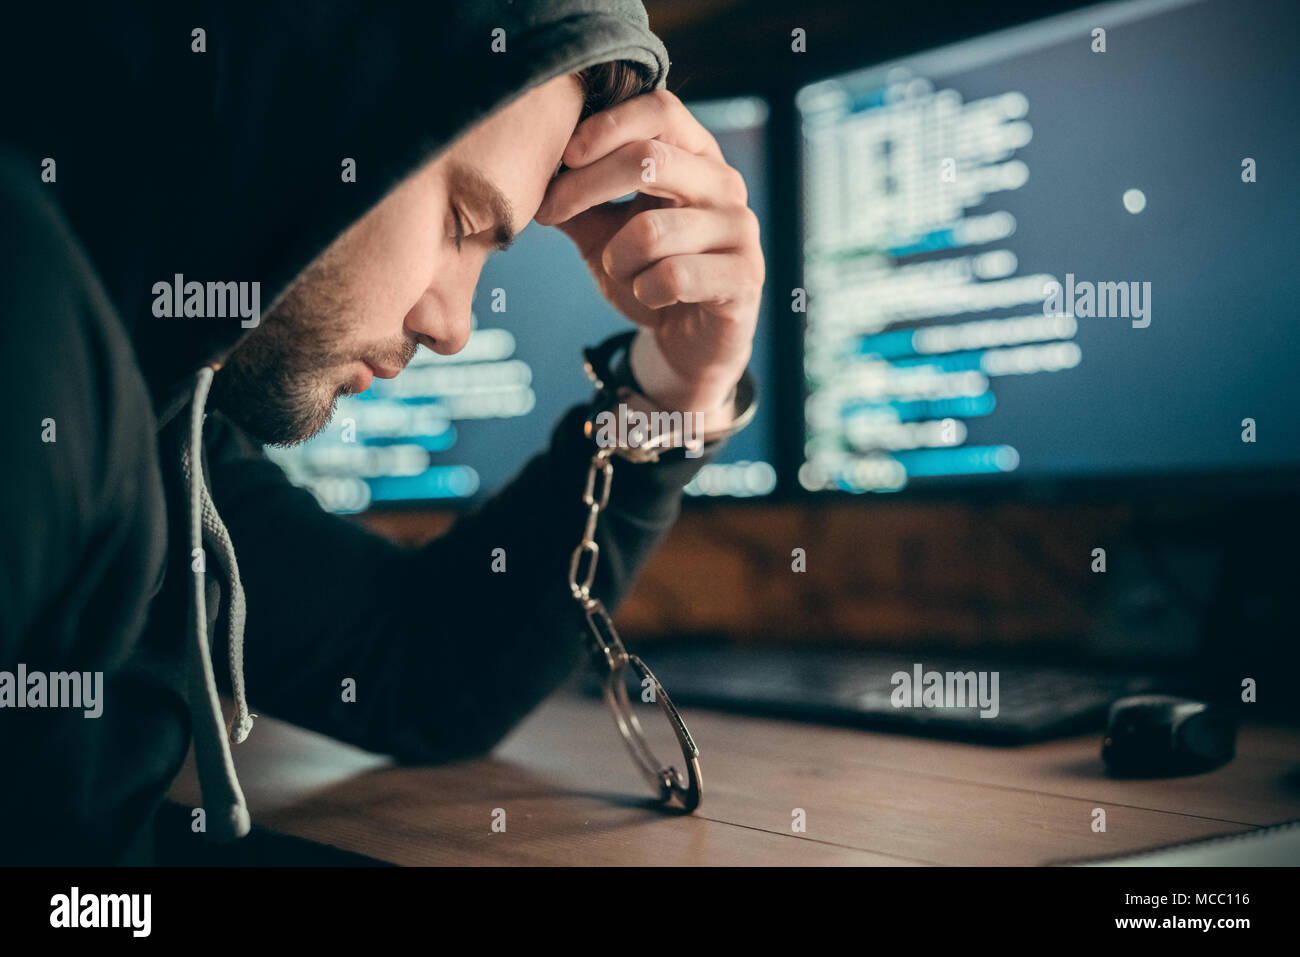 Hacker festgenommen verärgert oder traurig Internet kriminelle erwischt zu Inhaftierten sitzen mit Hand in Handschellen auf dem Computer code Hintergrund sein, Internetkriminalität Gesetz Stockfoto